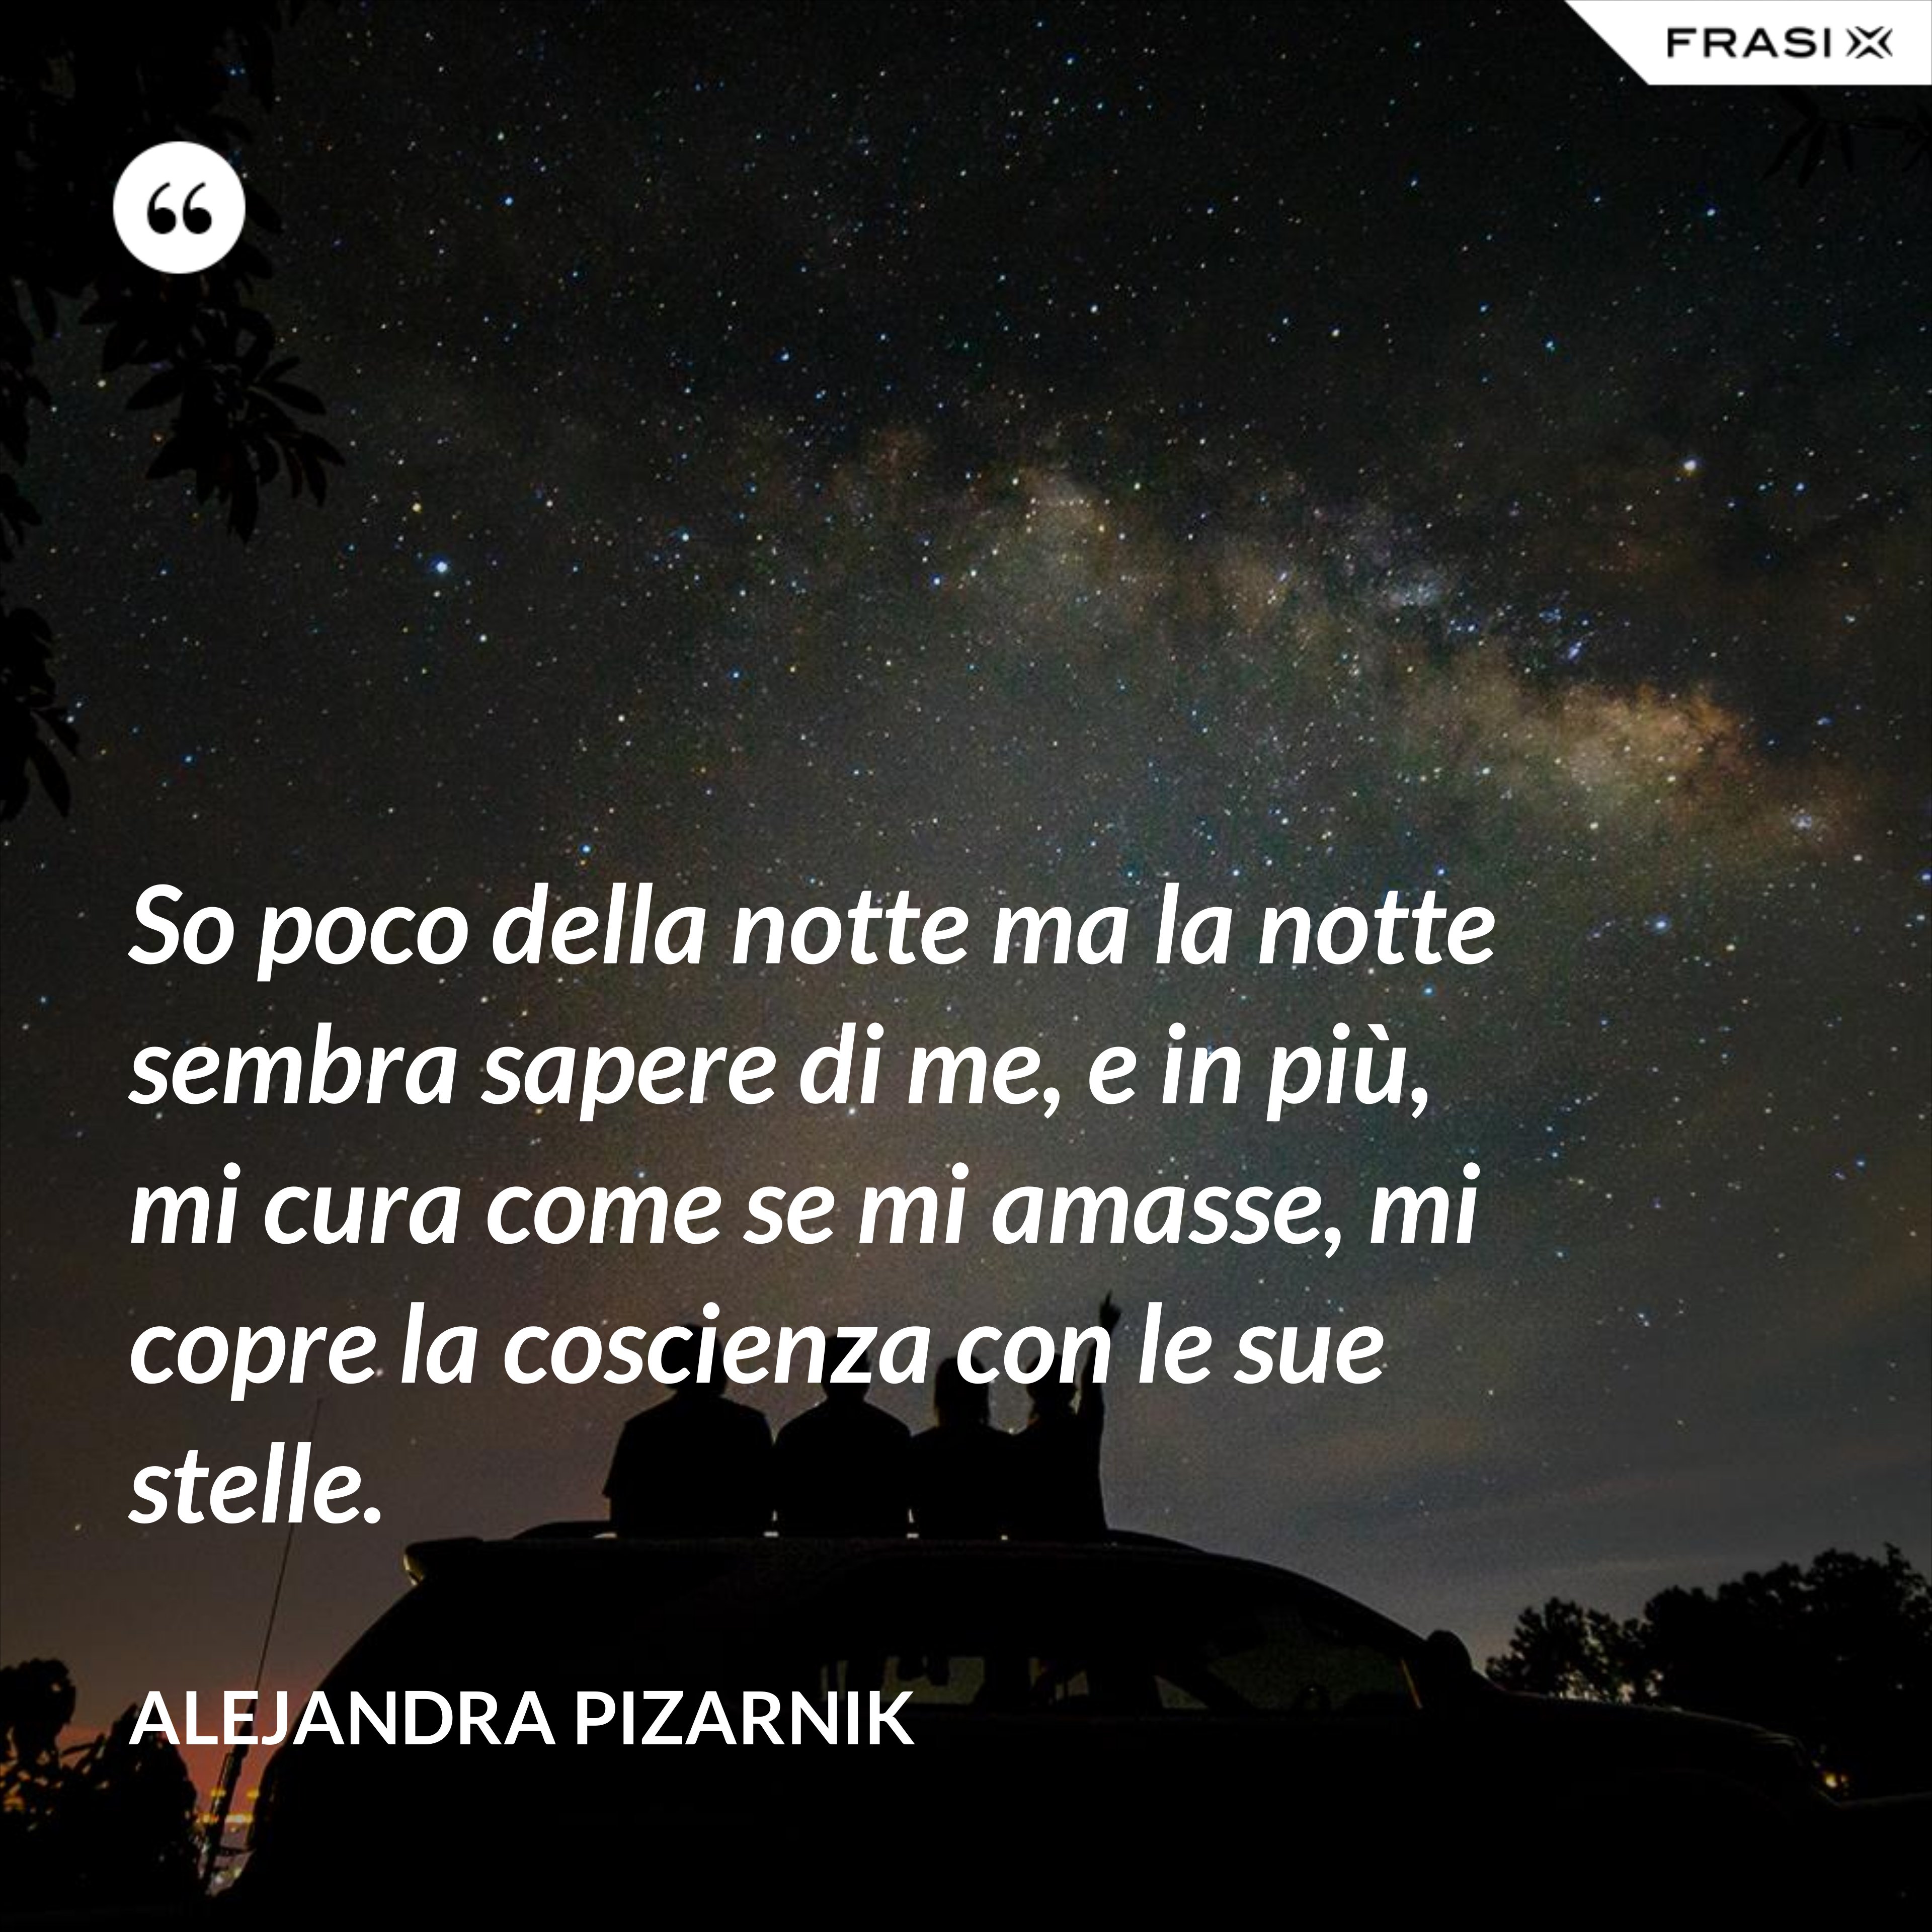 So poco della notte ma la notte sembra sapere di me, e in più, mi cura come se mi amasse, mi copre la coscienza con le sue stelle. - Alejandra Pizarnik